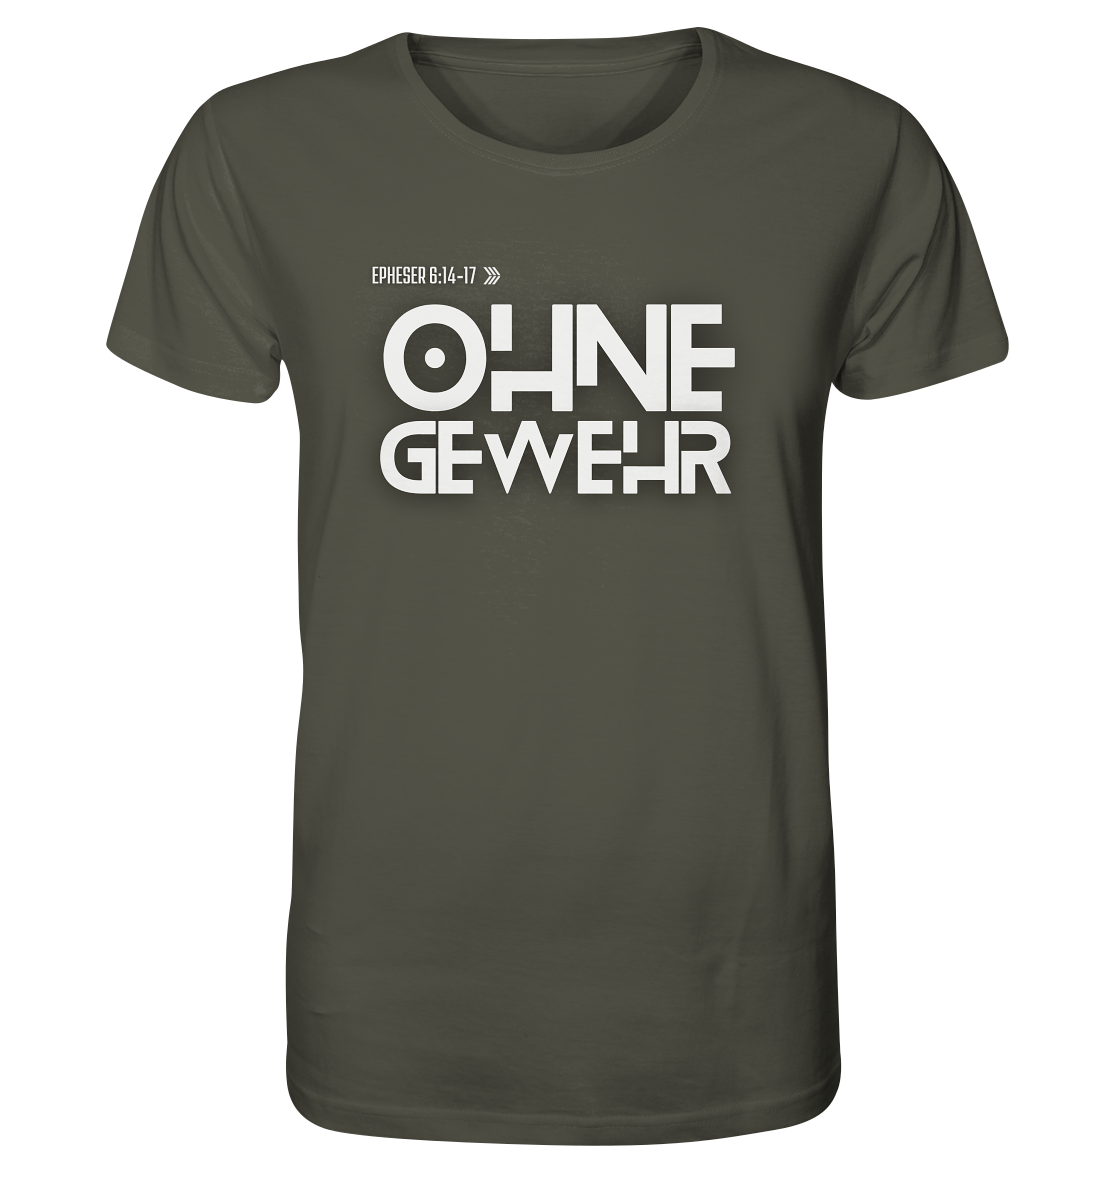 OHNE GEWEHR - Organic Shirt